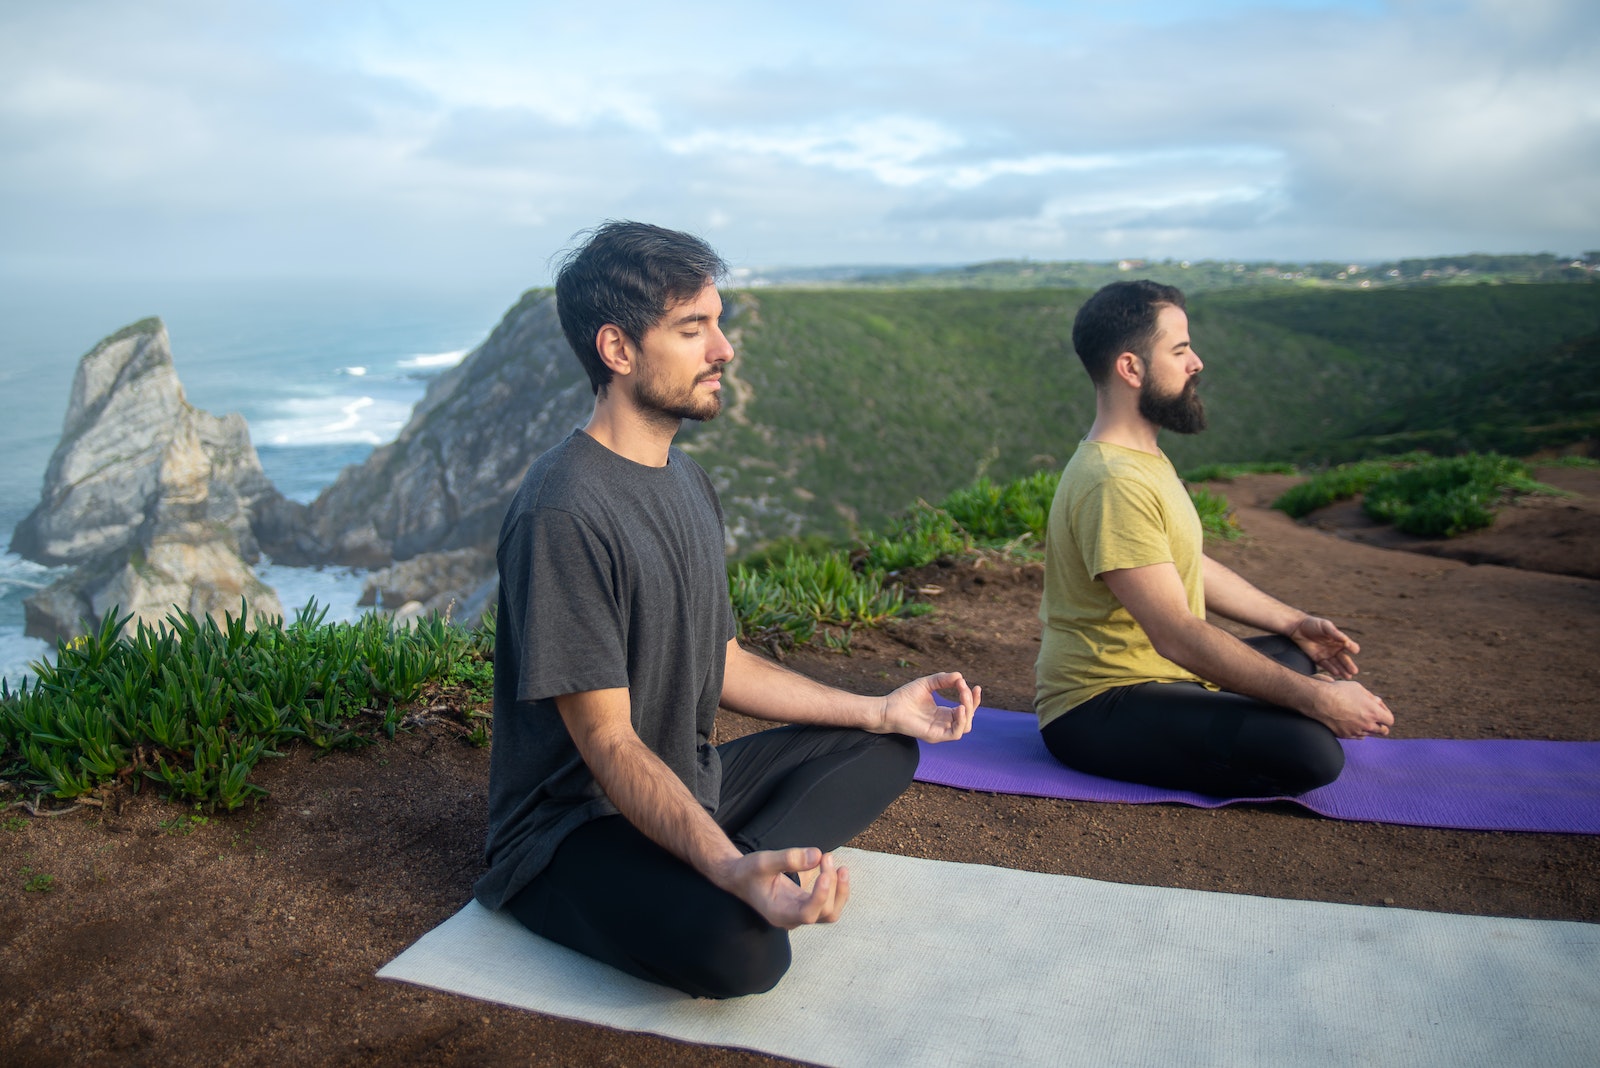 Réalisez votre potentiel en adoptant le yoga: sentez-vous plus fort, plus calme et plus centré. #yogaformen